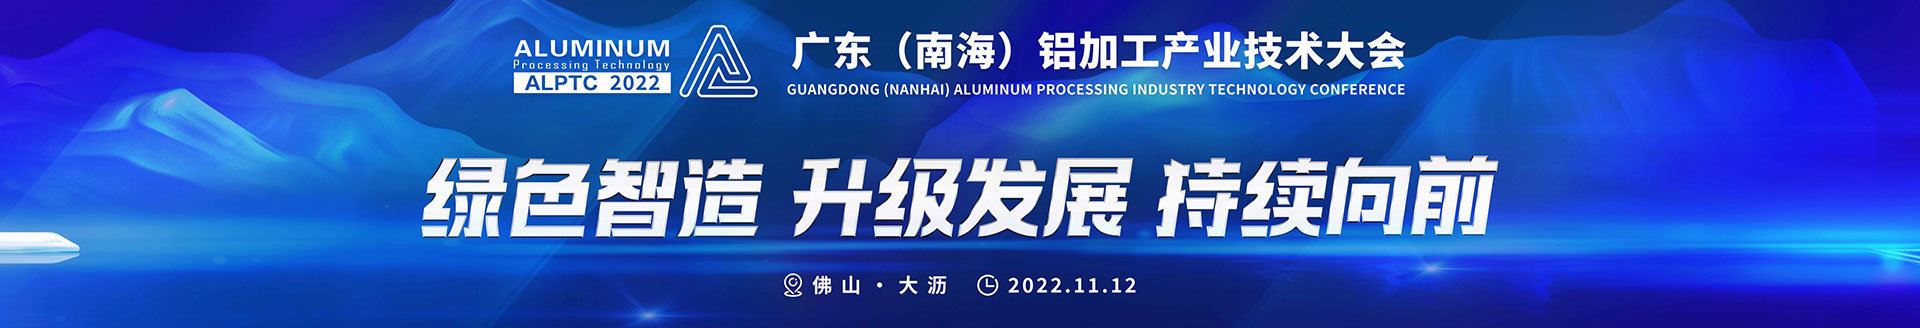 2022广东（南海）铝加工产业技术大会